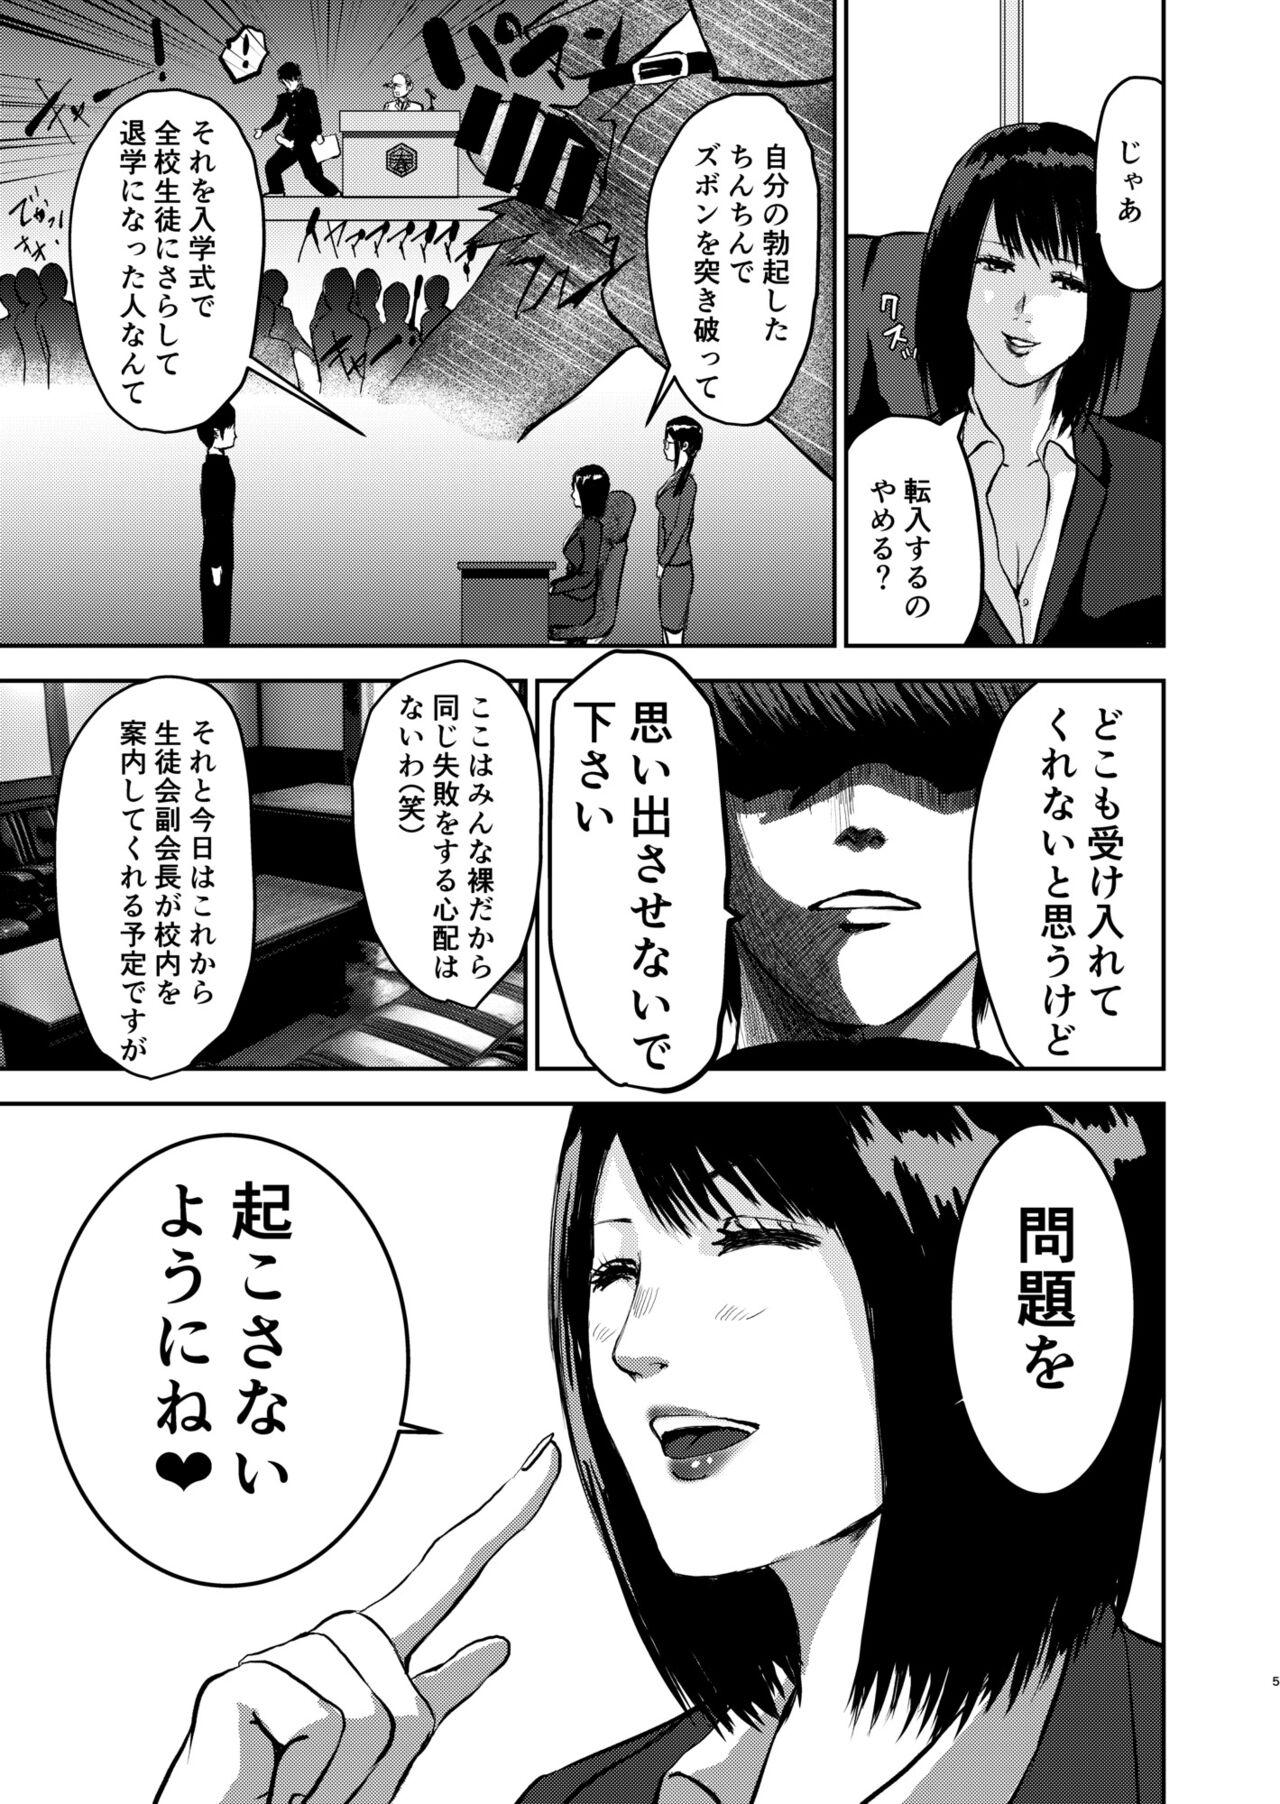 Playing Moshimo Zetsurin no Ore ga, Zenra ga Kousoku no Jogakuen ni Tenkou shitara - Original Linda - Page 5